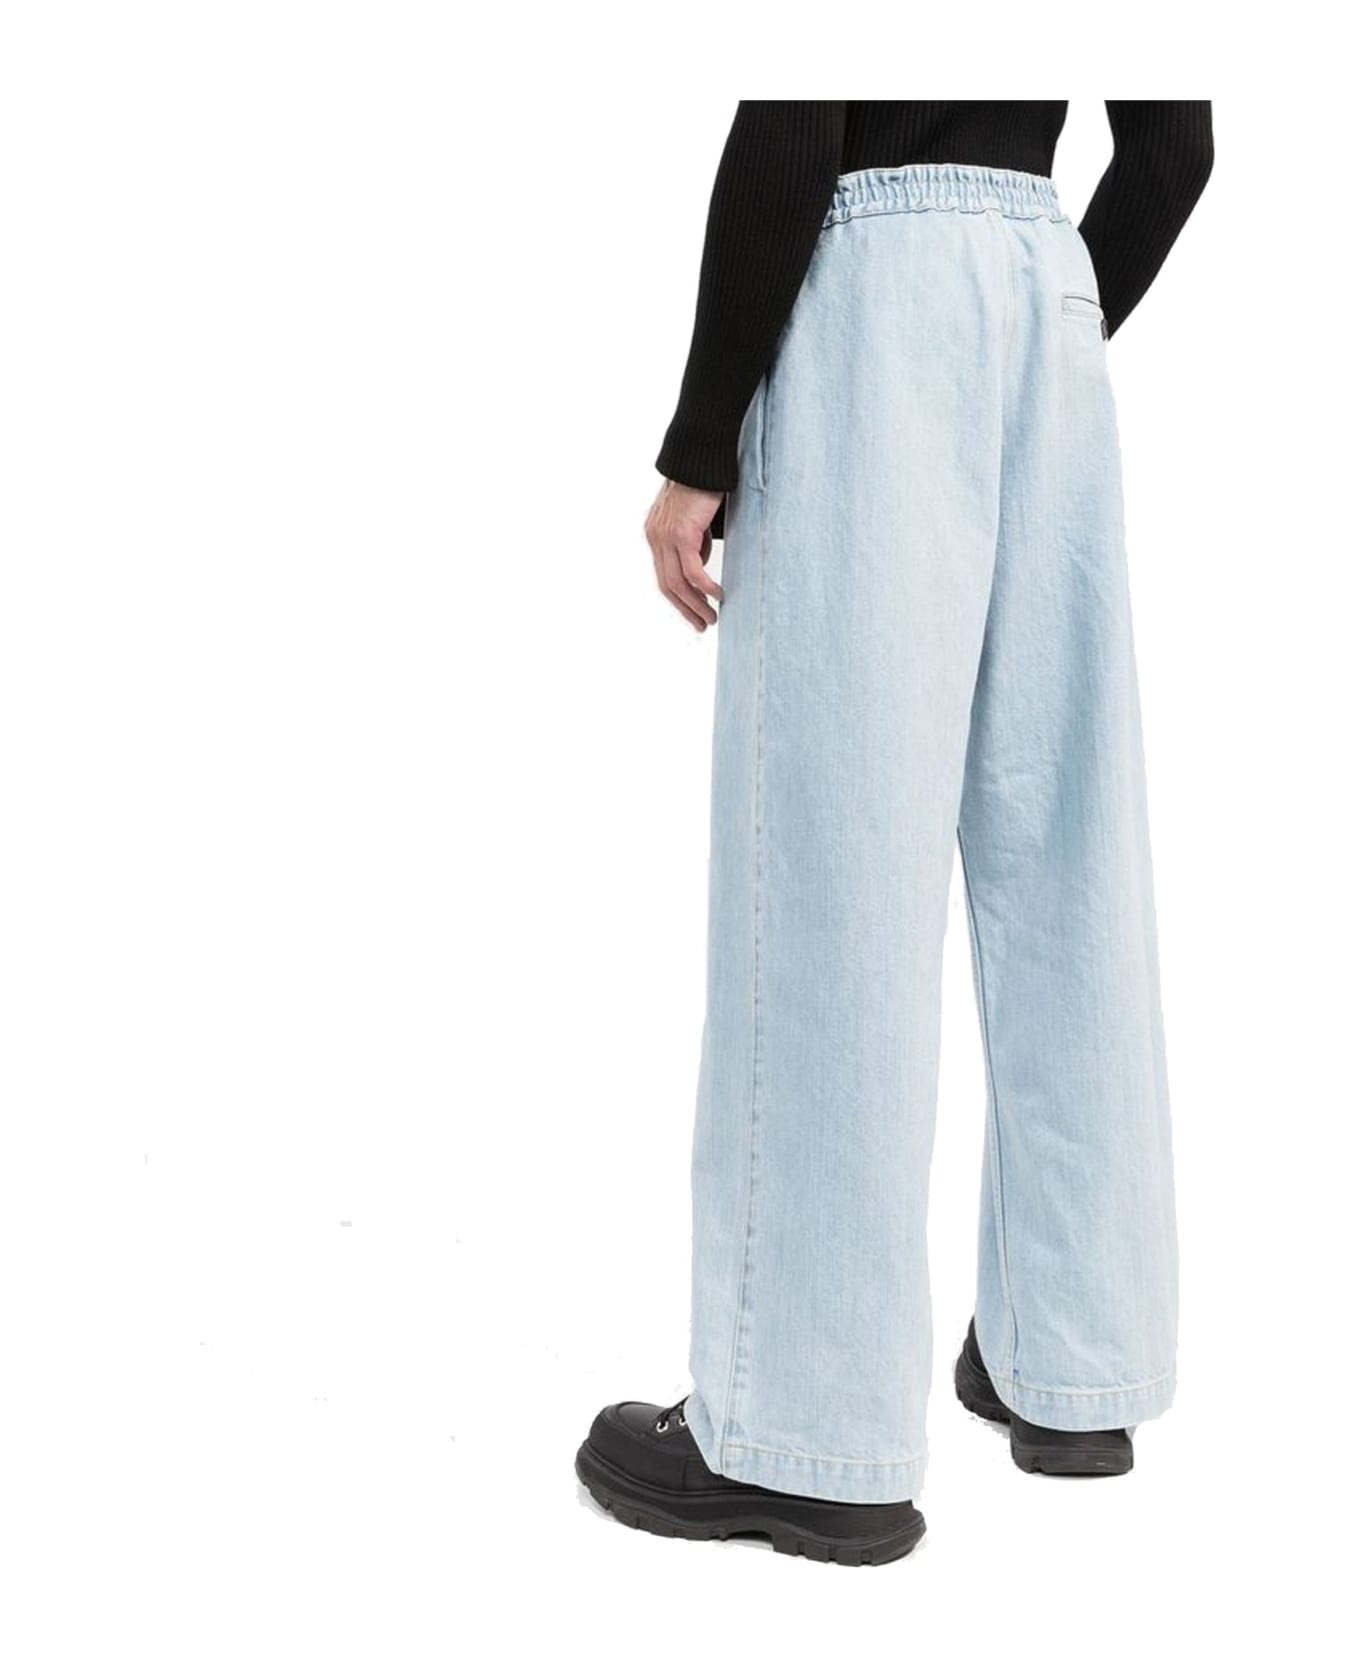 Moncler Belted Denim Jeans - Blue